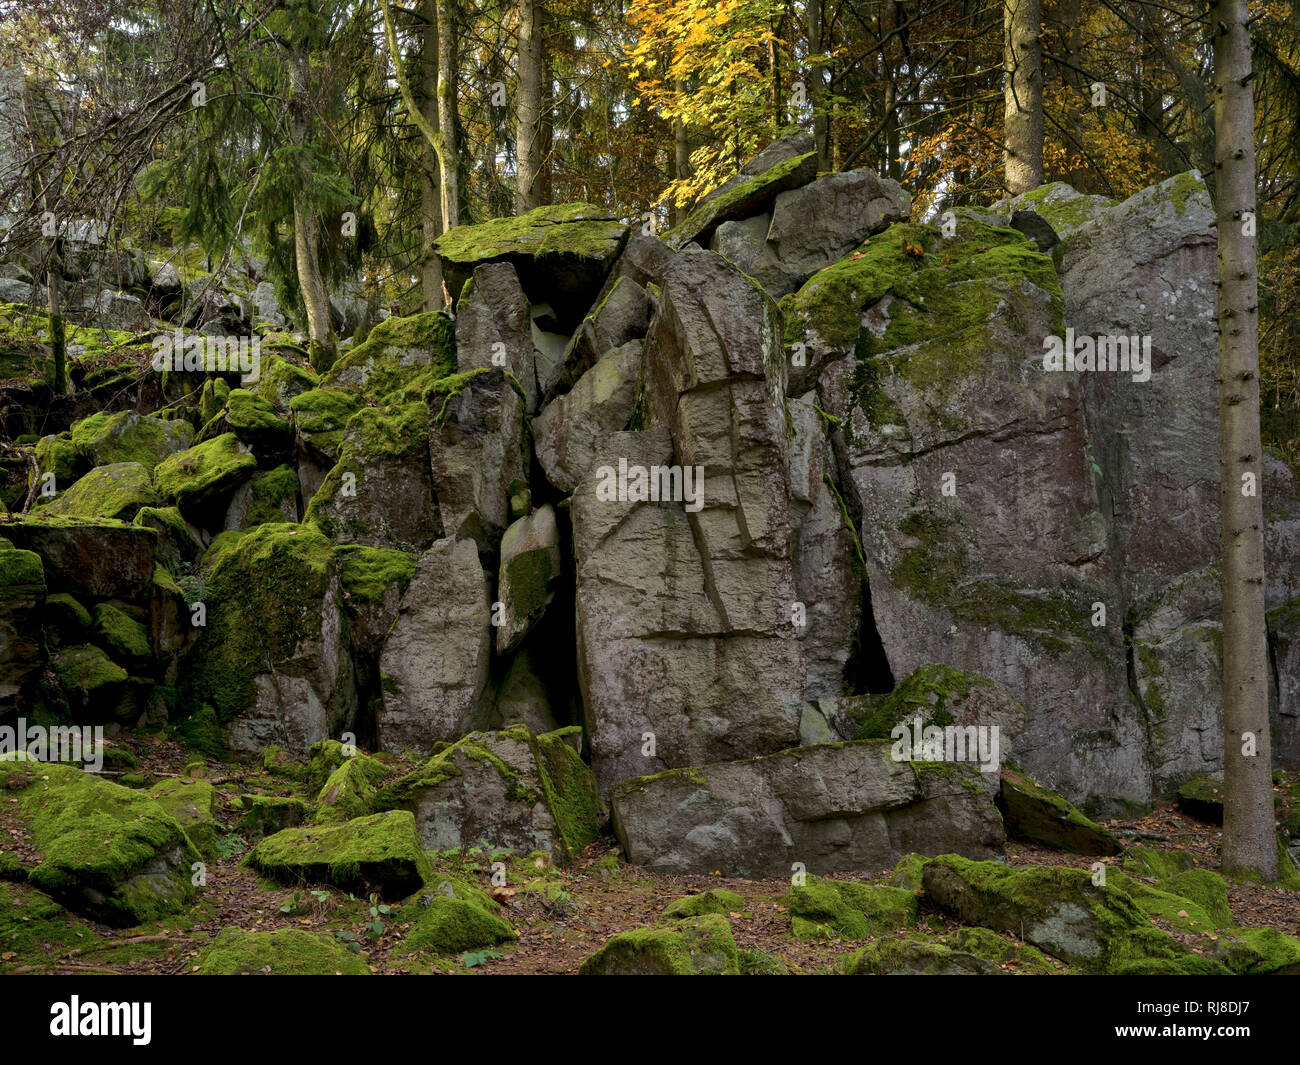 Deutschland, Hessen, Naturpark Hessische Rhön, UNESCO-Biosphärenreservat, die Steinwand bei Poppenhausen, Herbst Stock Photo